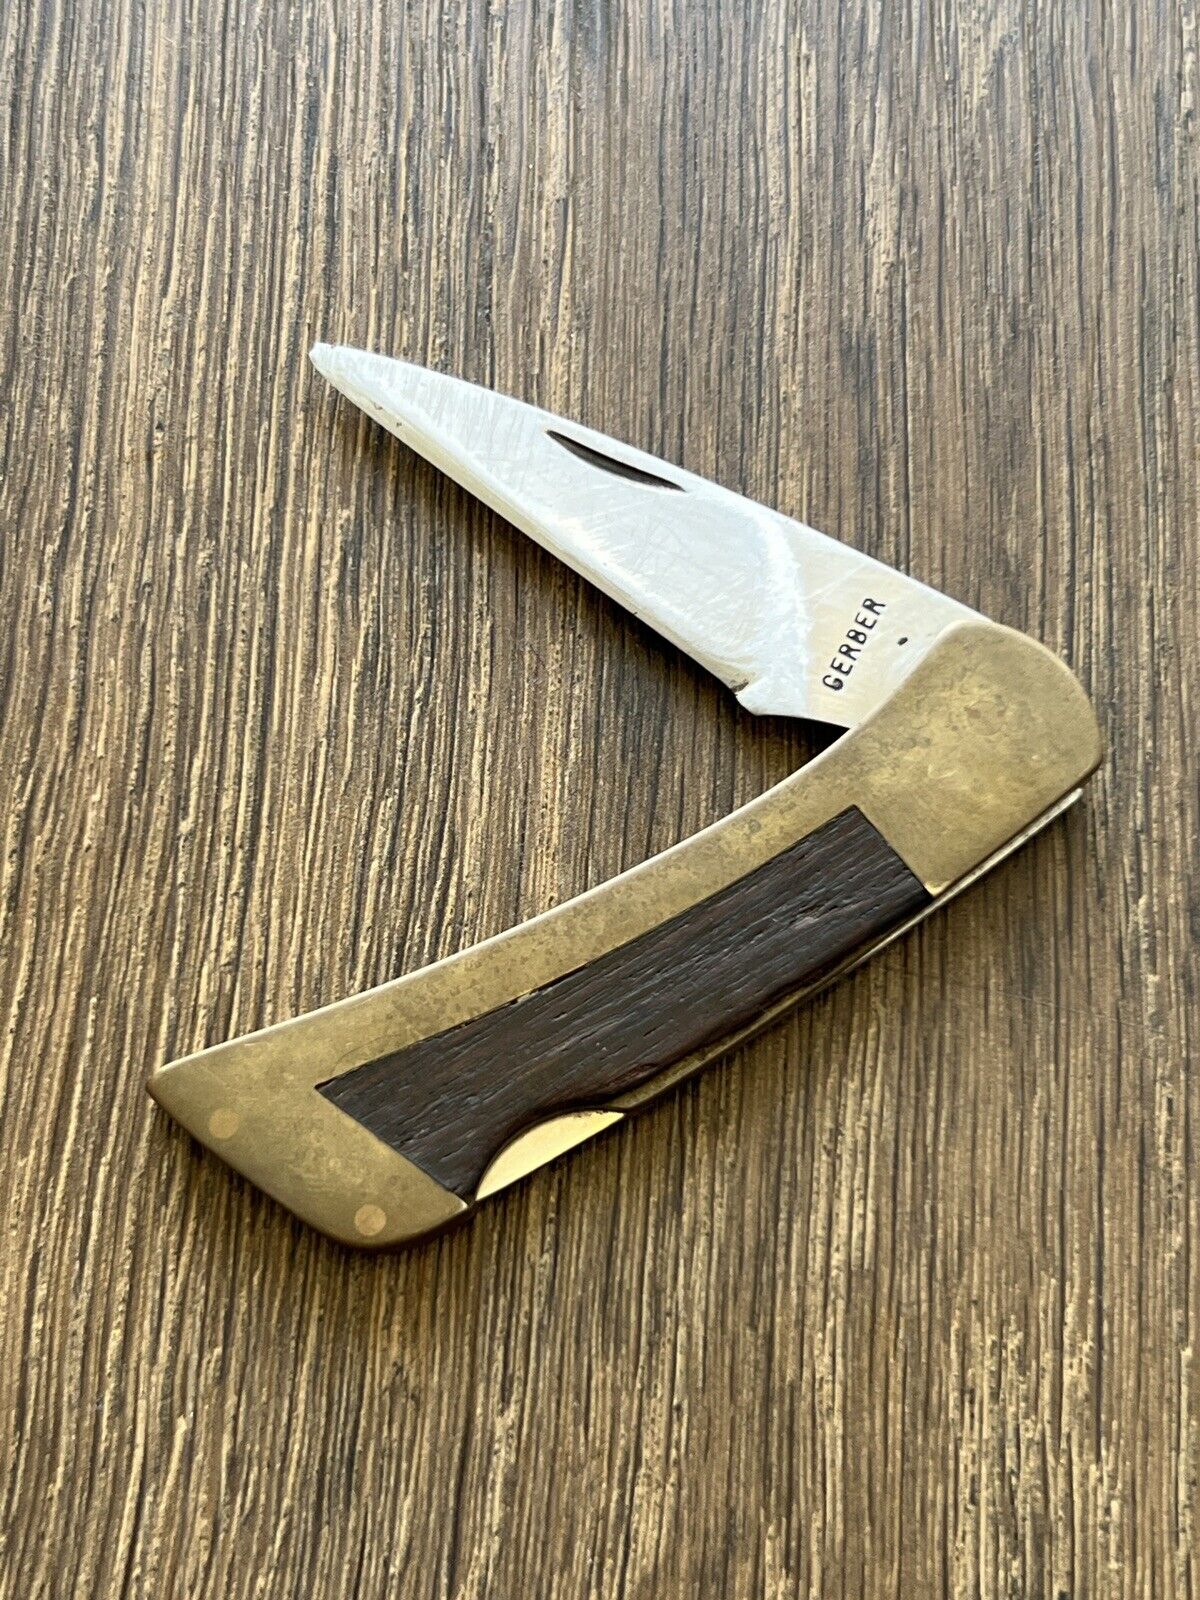 Gerber 97223 Sportsman Vintage Folding Lockback Pocket Knife Portland OR